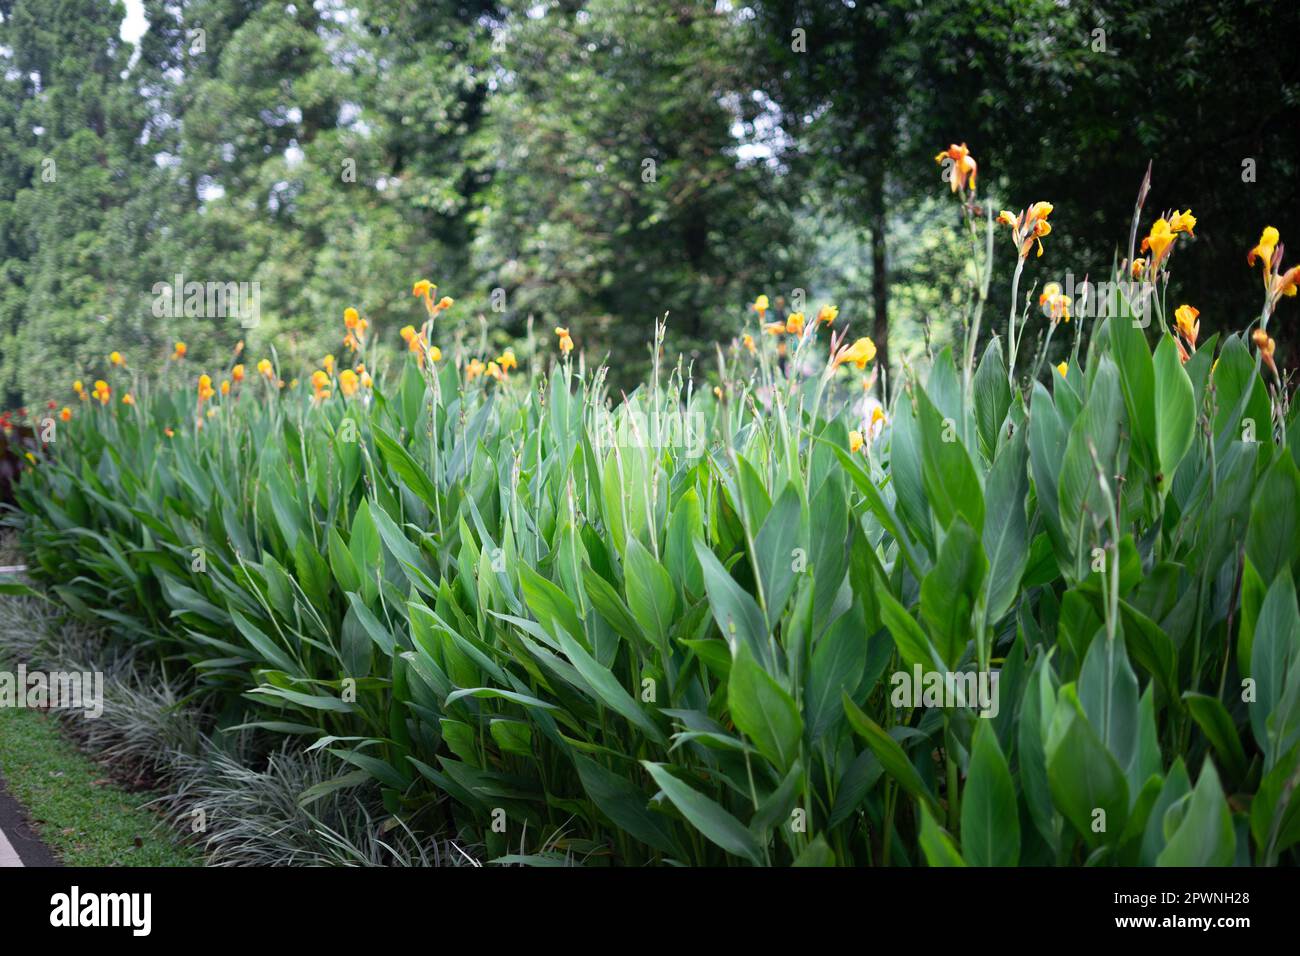 Wunderschöne Canna indica-Blume oder essbare Canna-Blume in einem Garten in Bogor Botanical Gardens, Indonesien. (Cannaceae-Familie, Liliopsida-Klasse) Stockfoto